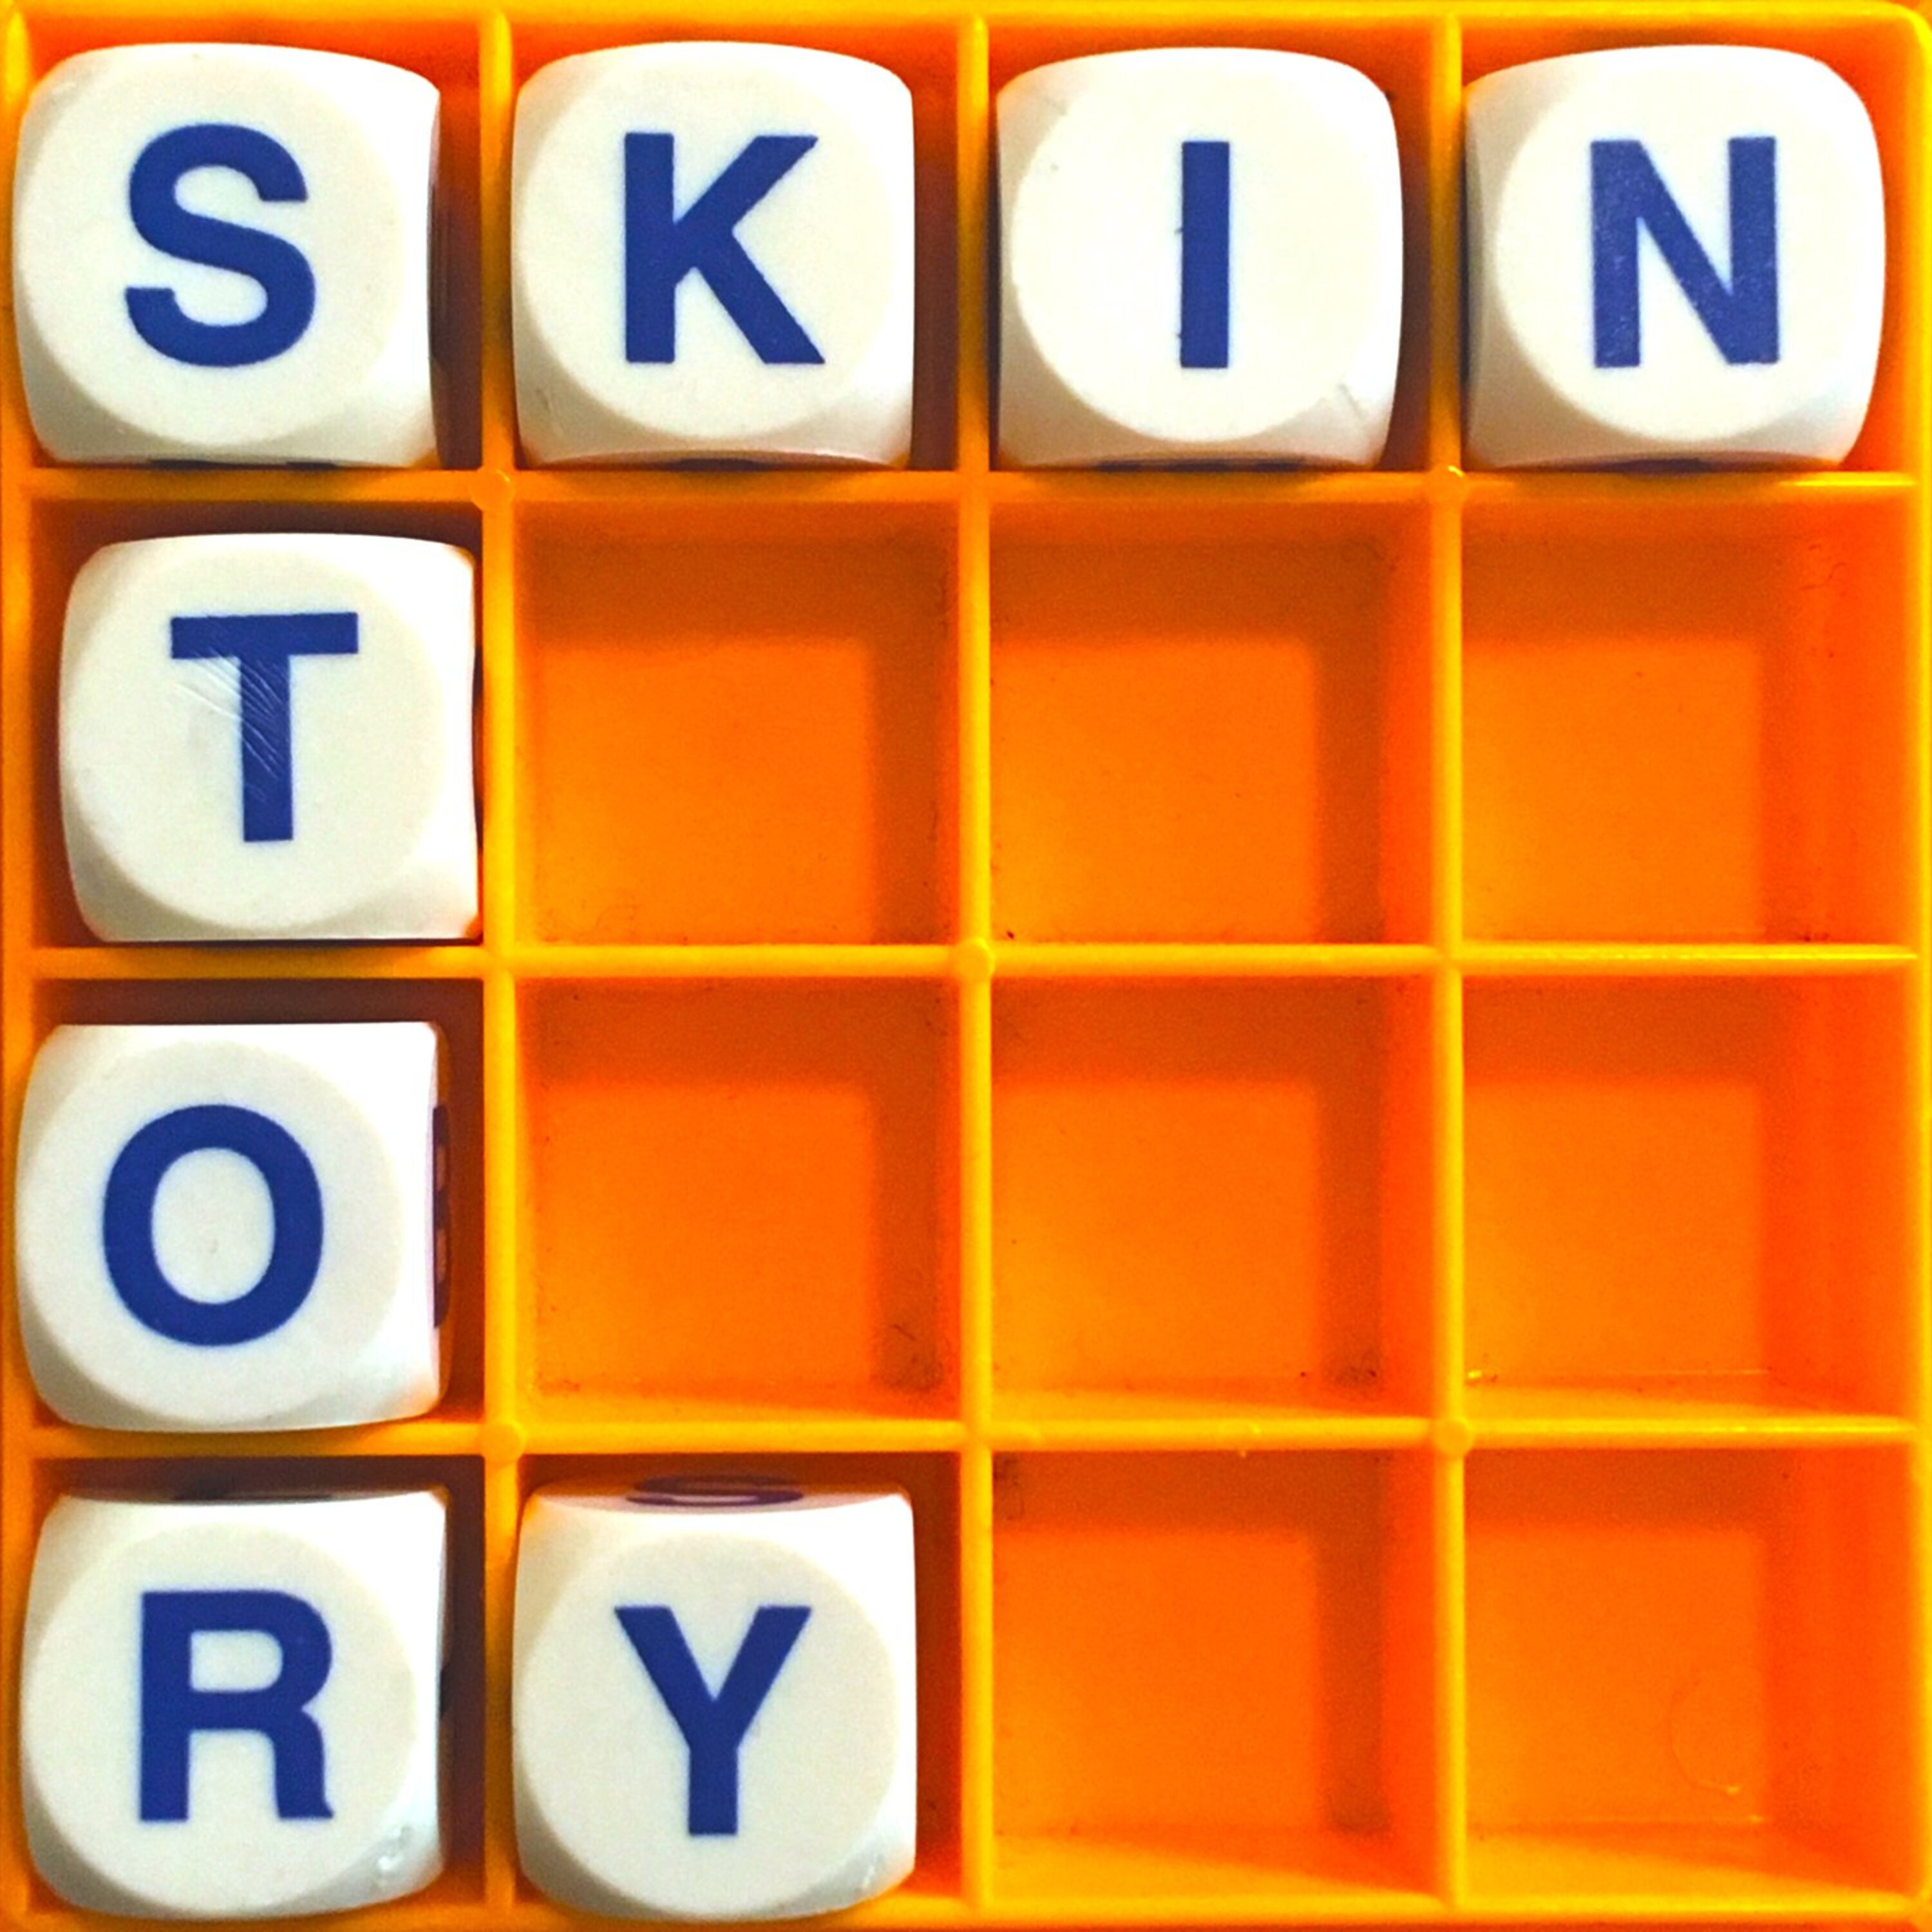 Thumbnail for "85. Skin Story".